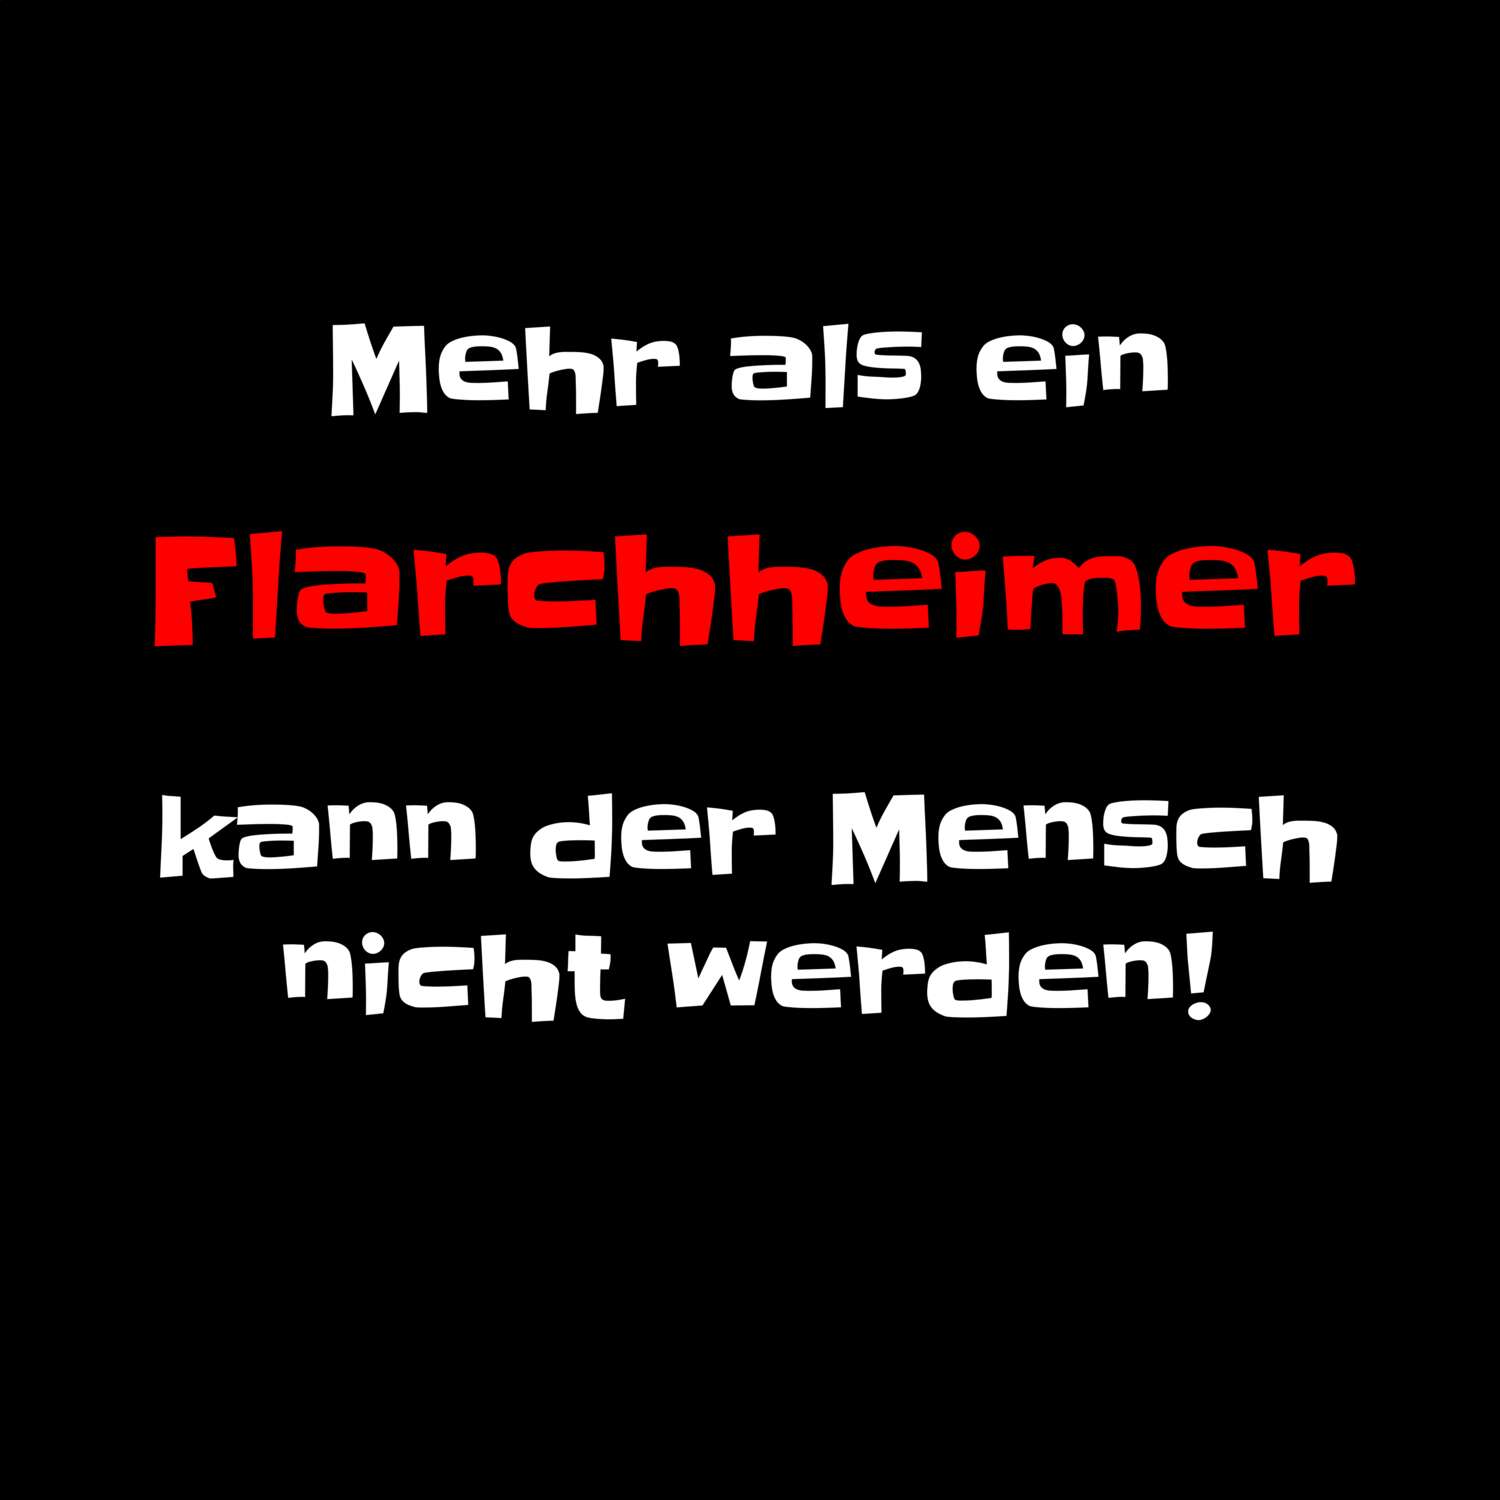 Flarchheim T-Shirt »Mehr als ein«